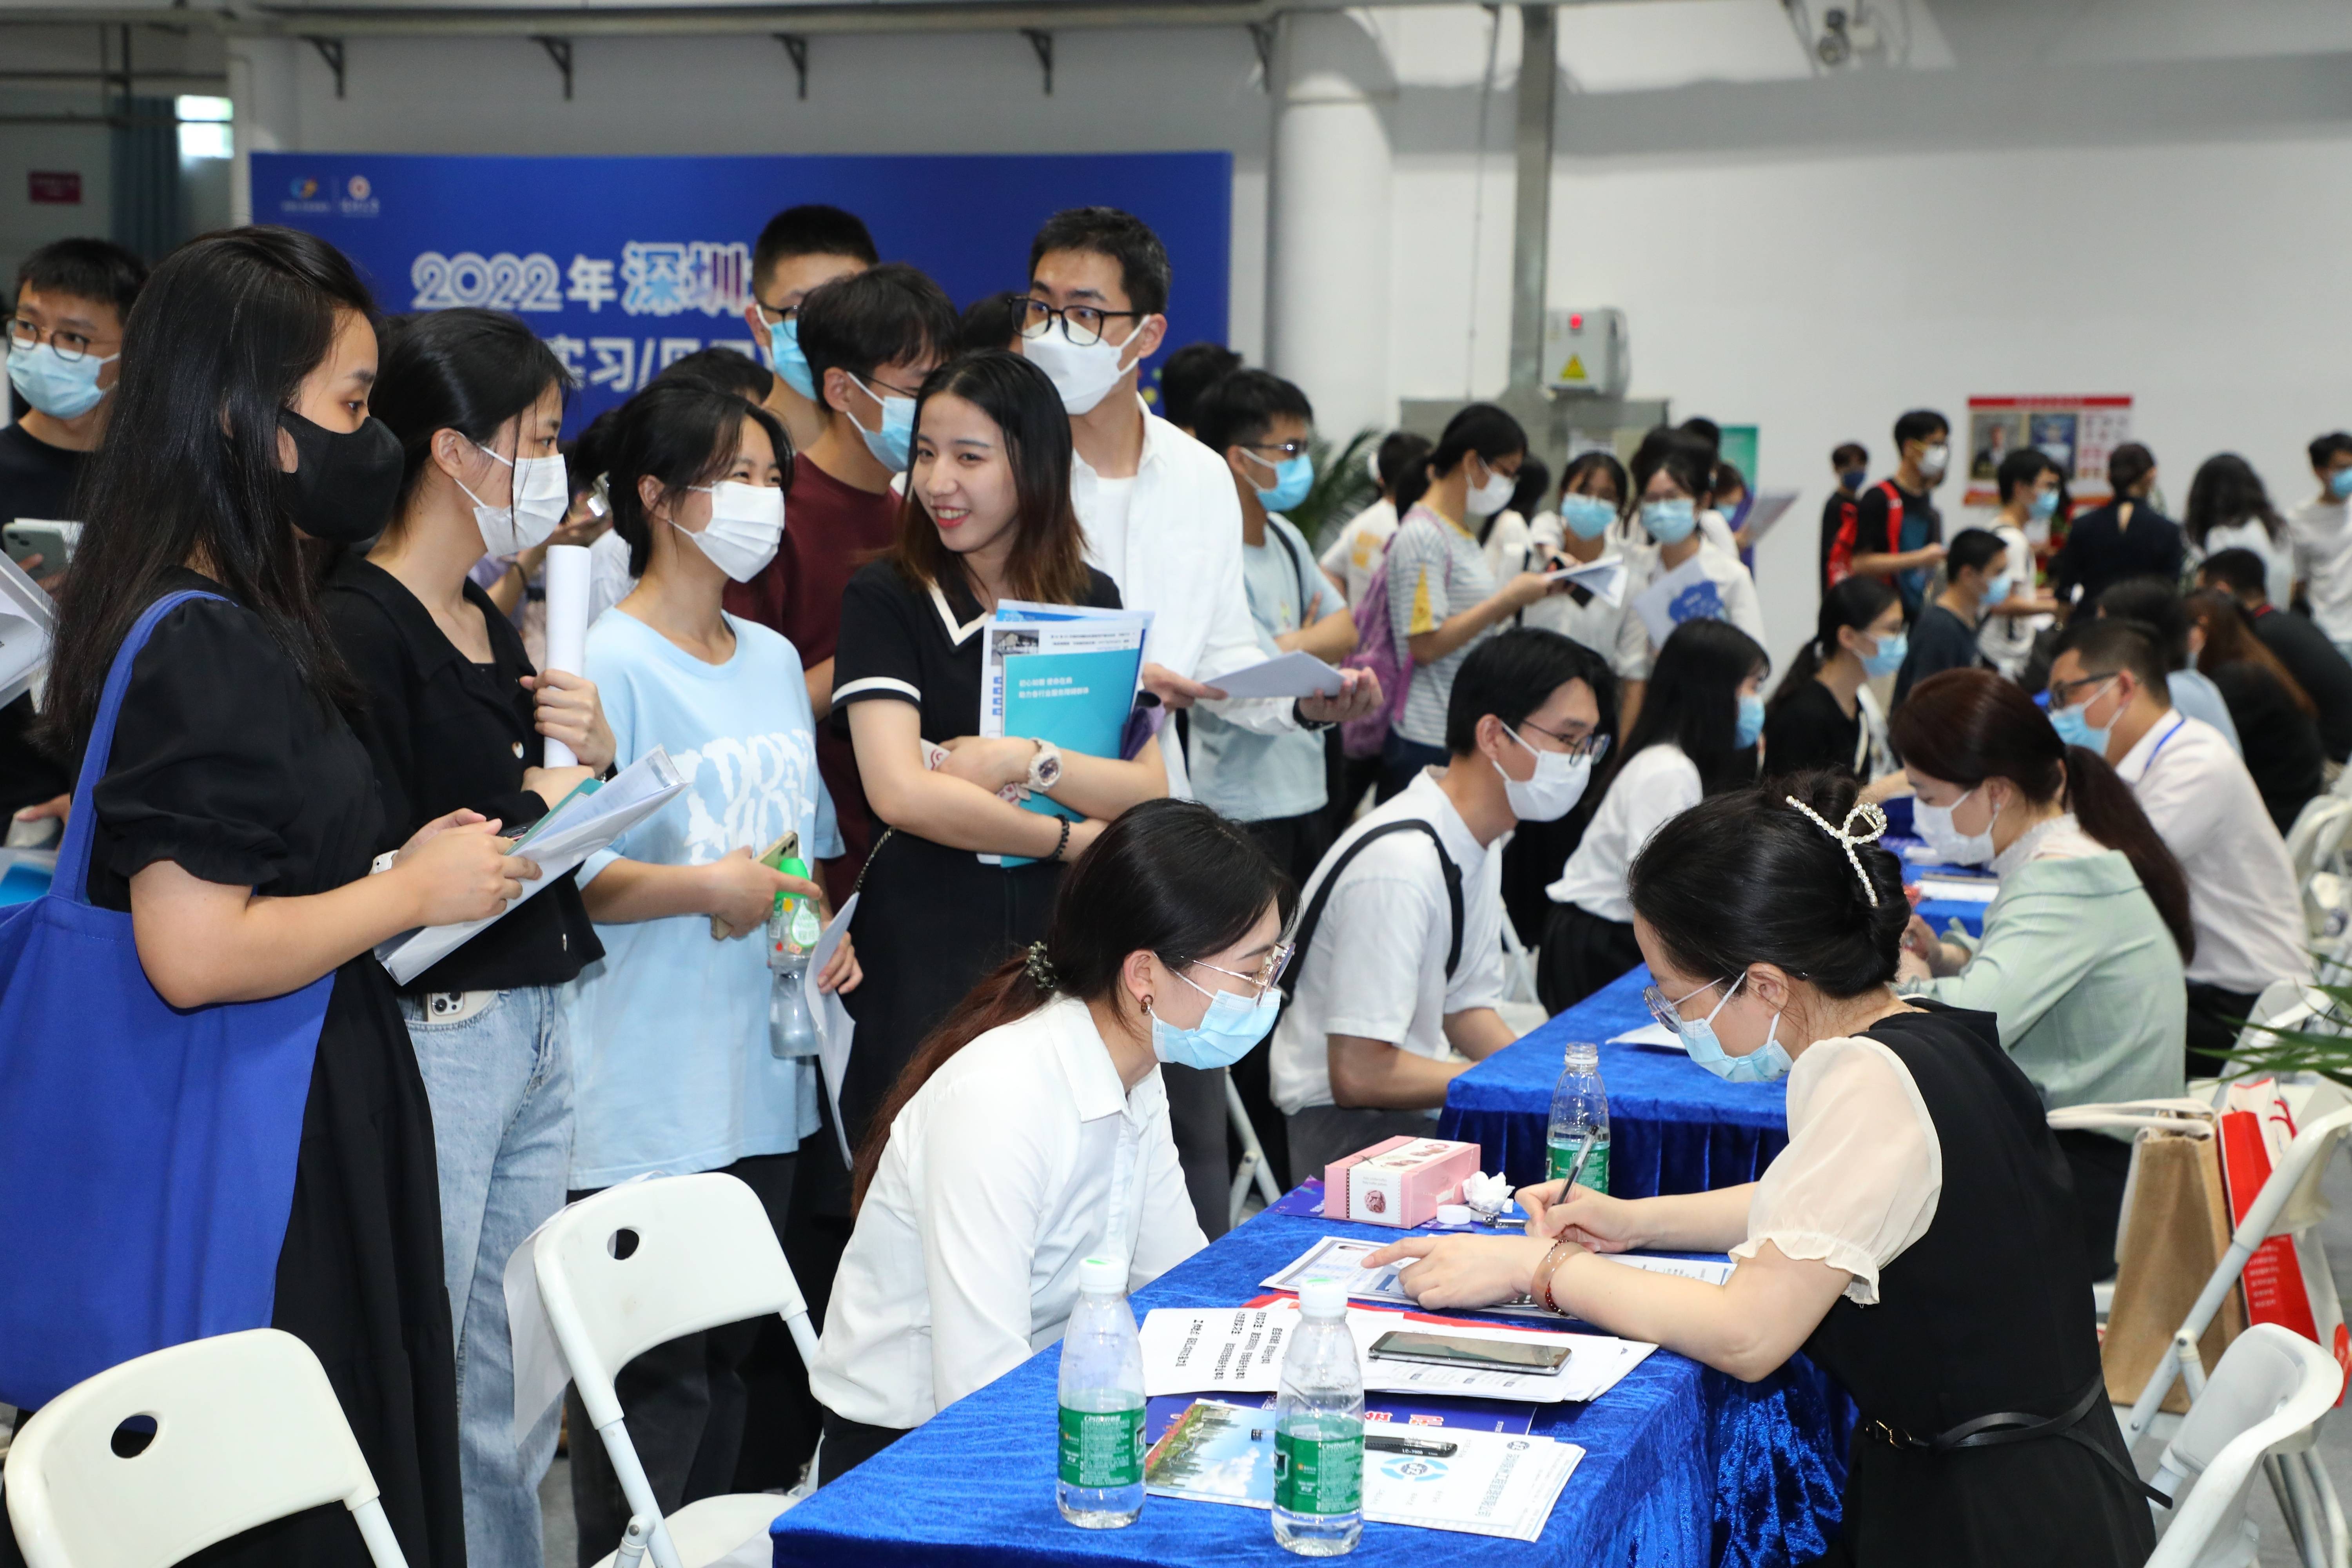 仅5,6月南方科技大学和深圳大学的两场线下校园招聘会,提供岗位8000余